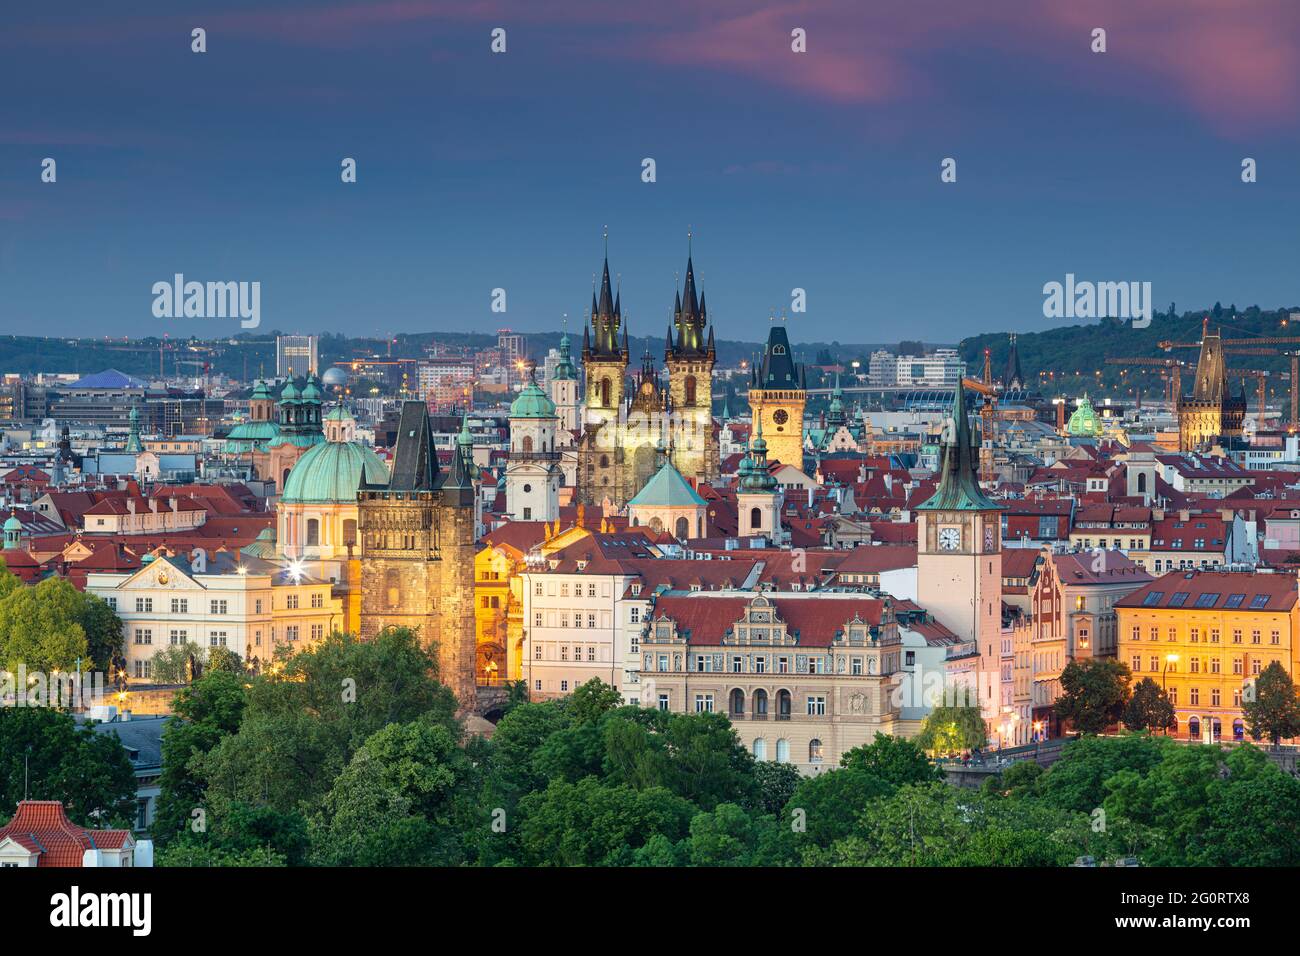 Prag. Luftbild von Prag, Tschechische Republik mit der Kirche unserer Lieben Frau vor Tyn, Altstädter Brückenturm, Pulverturm bei Sonnenuntergang. Stockfoto